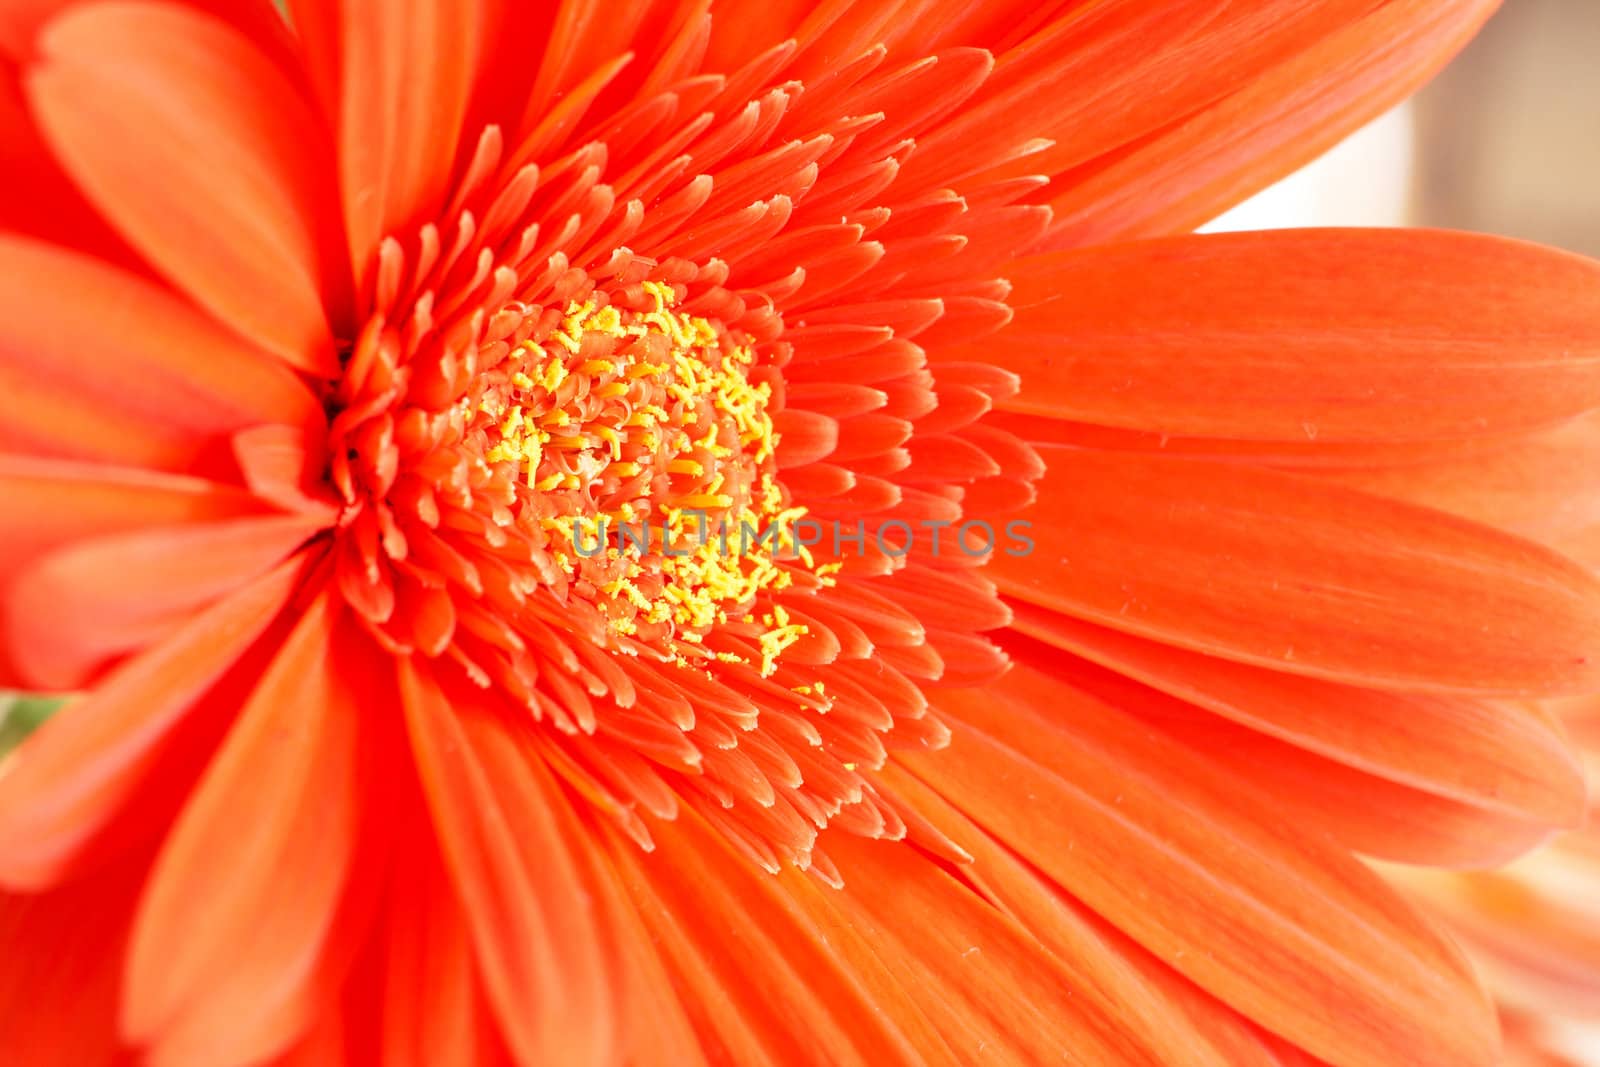 Red gerber daisy closeup by Elenat